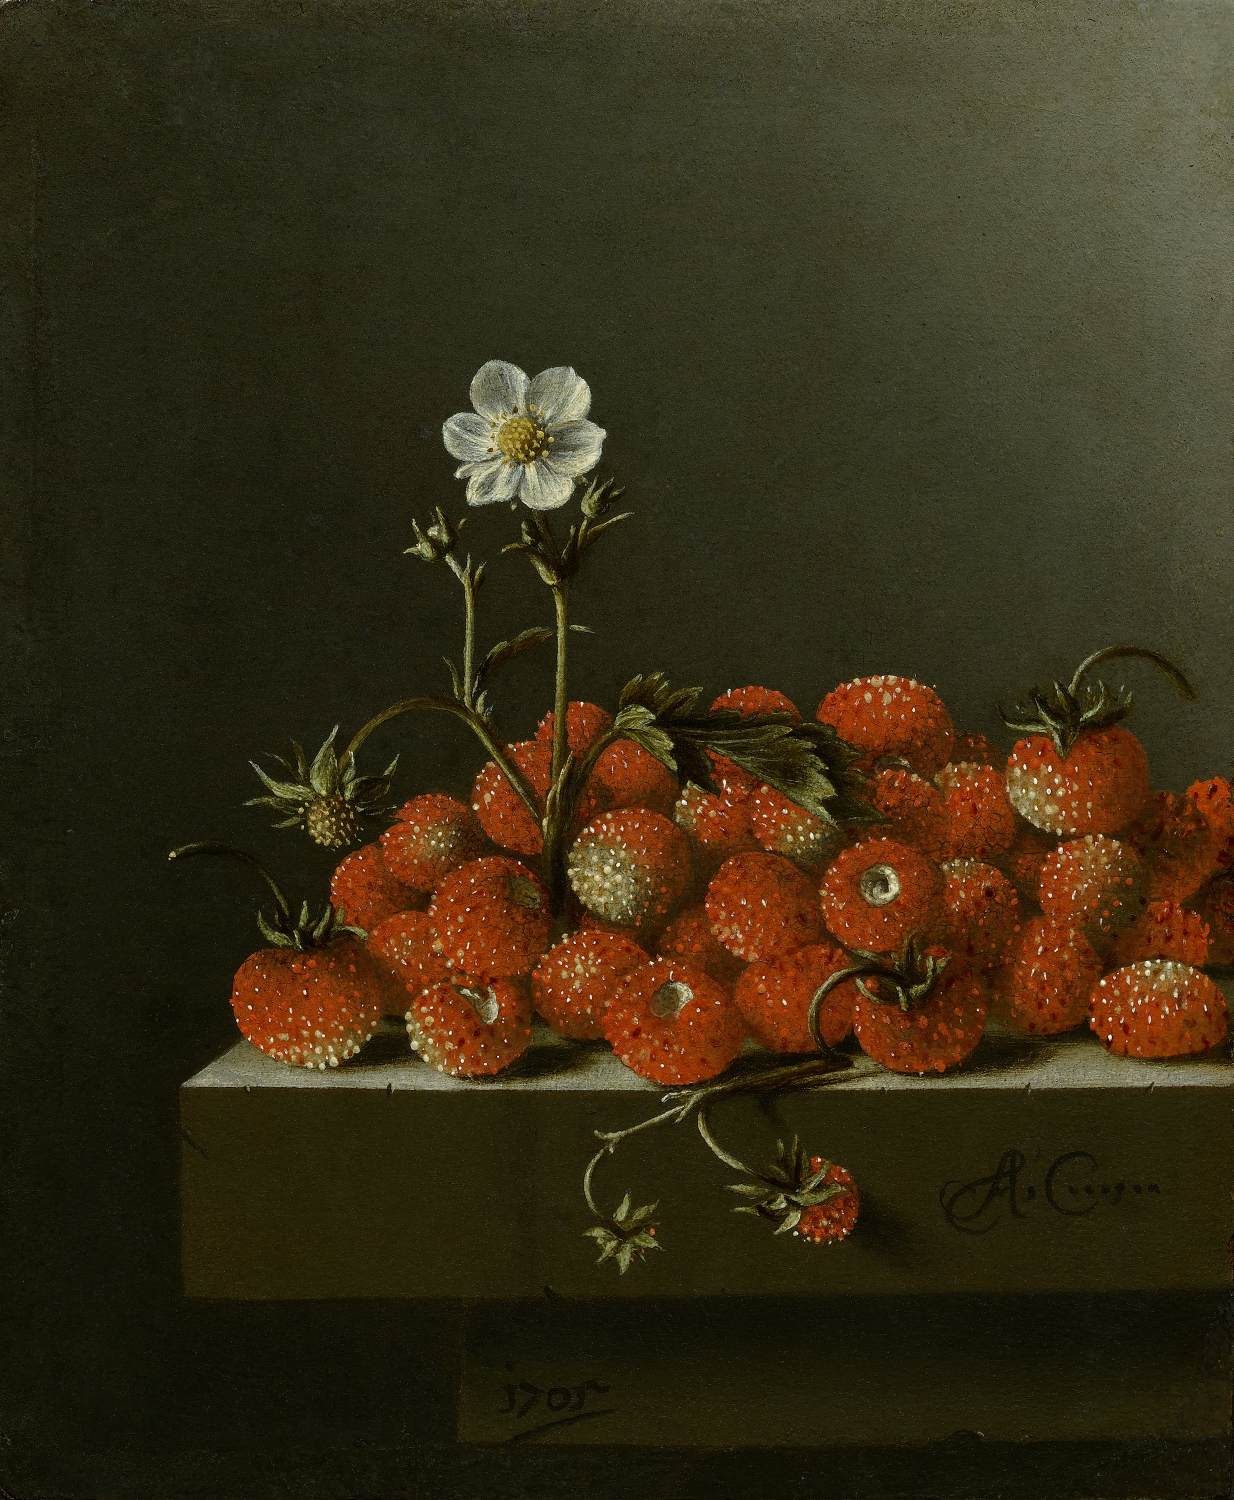 Bodegón avec des fraises sauvages